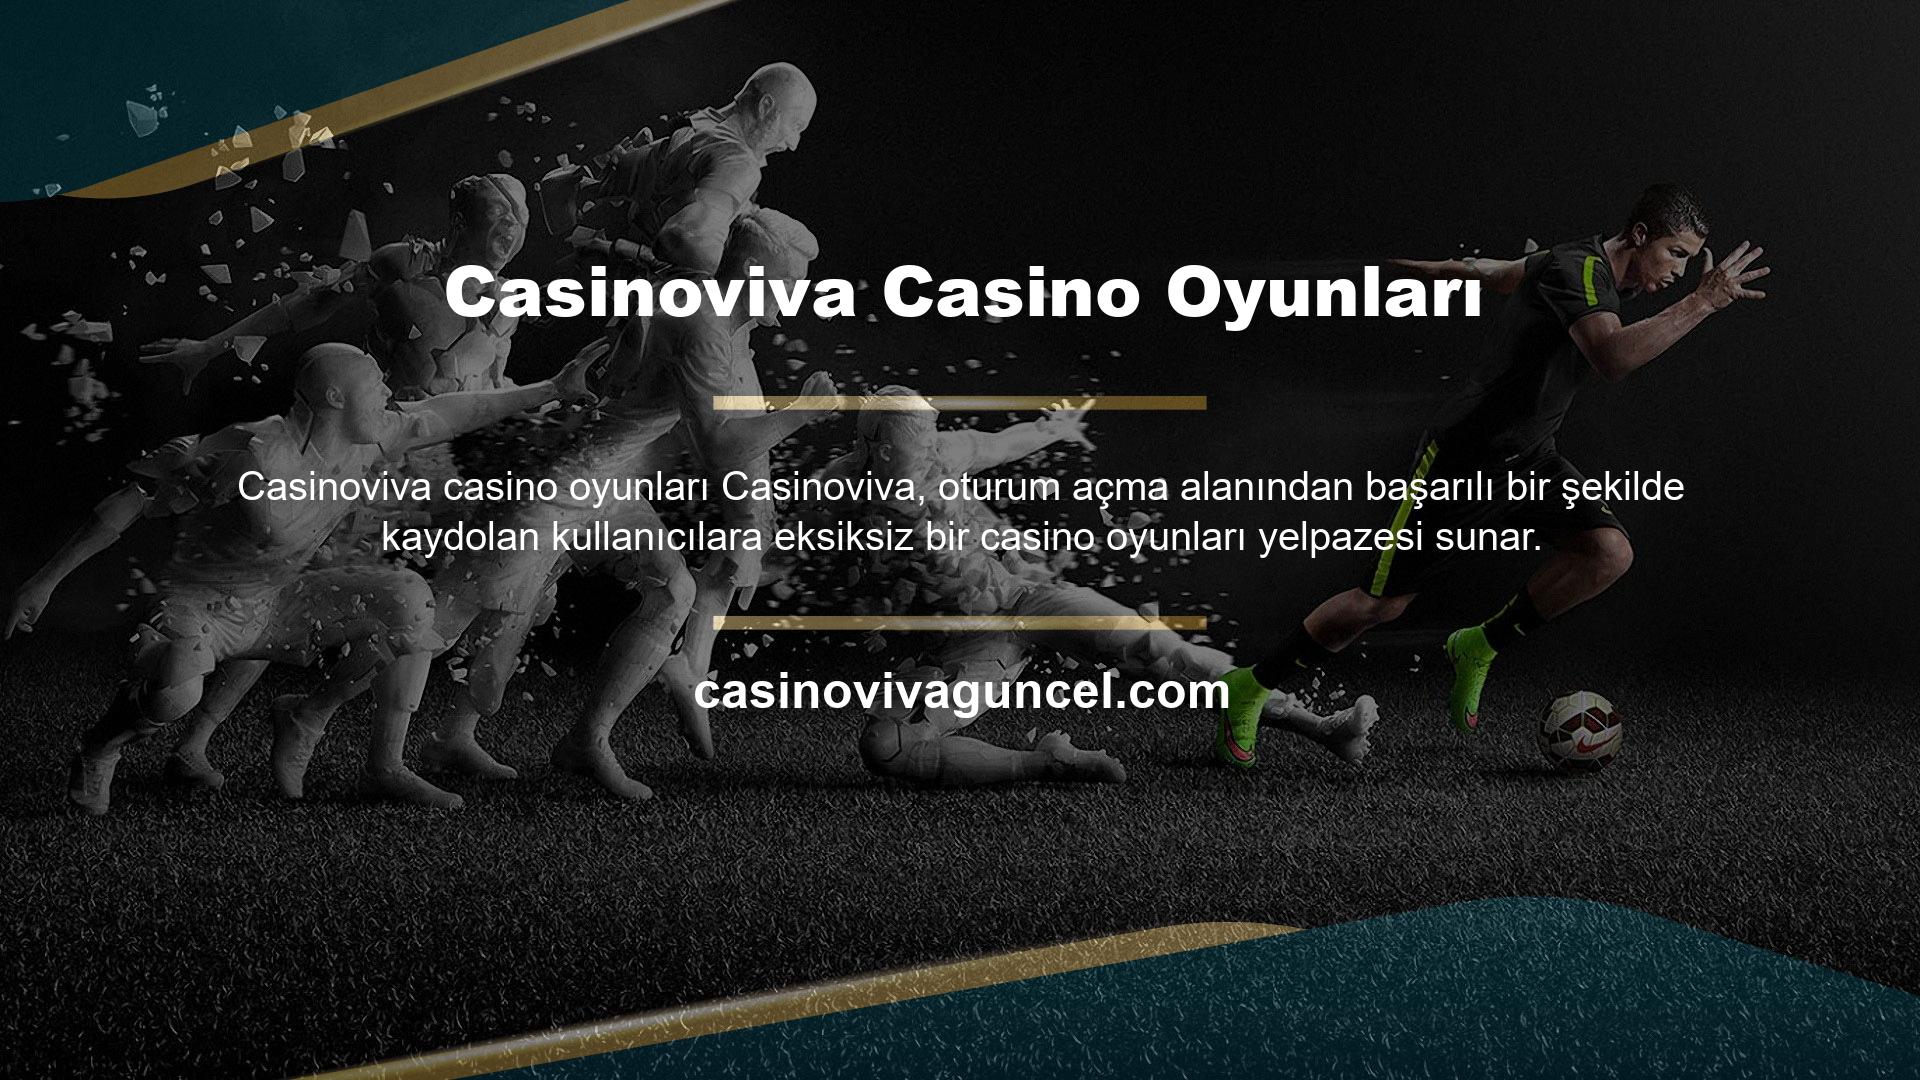 Casinoviva web sitesinde yer alan bahis oyunları arasında Avrupa Ligi tarafından oluşturulan spor müsabakaları da yer almaktadır